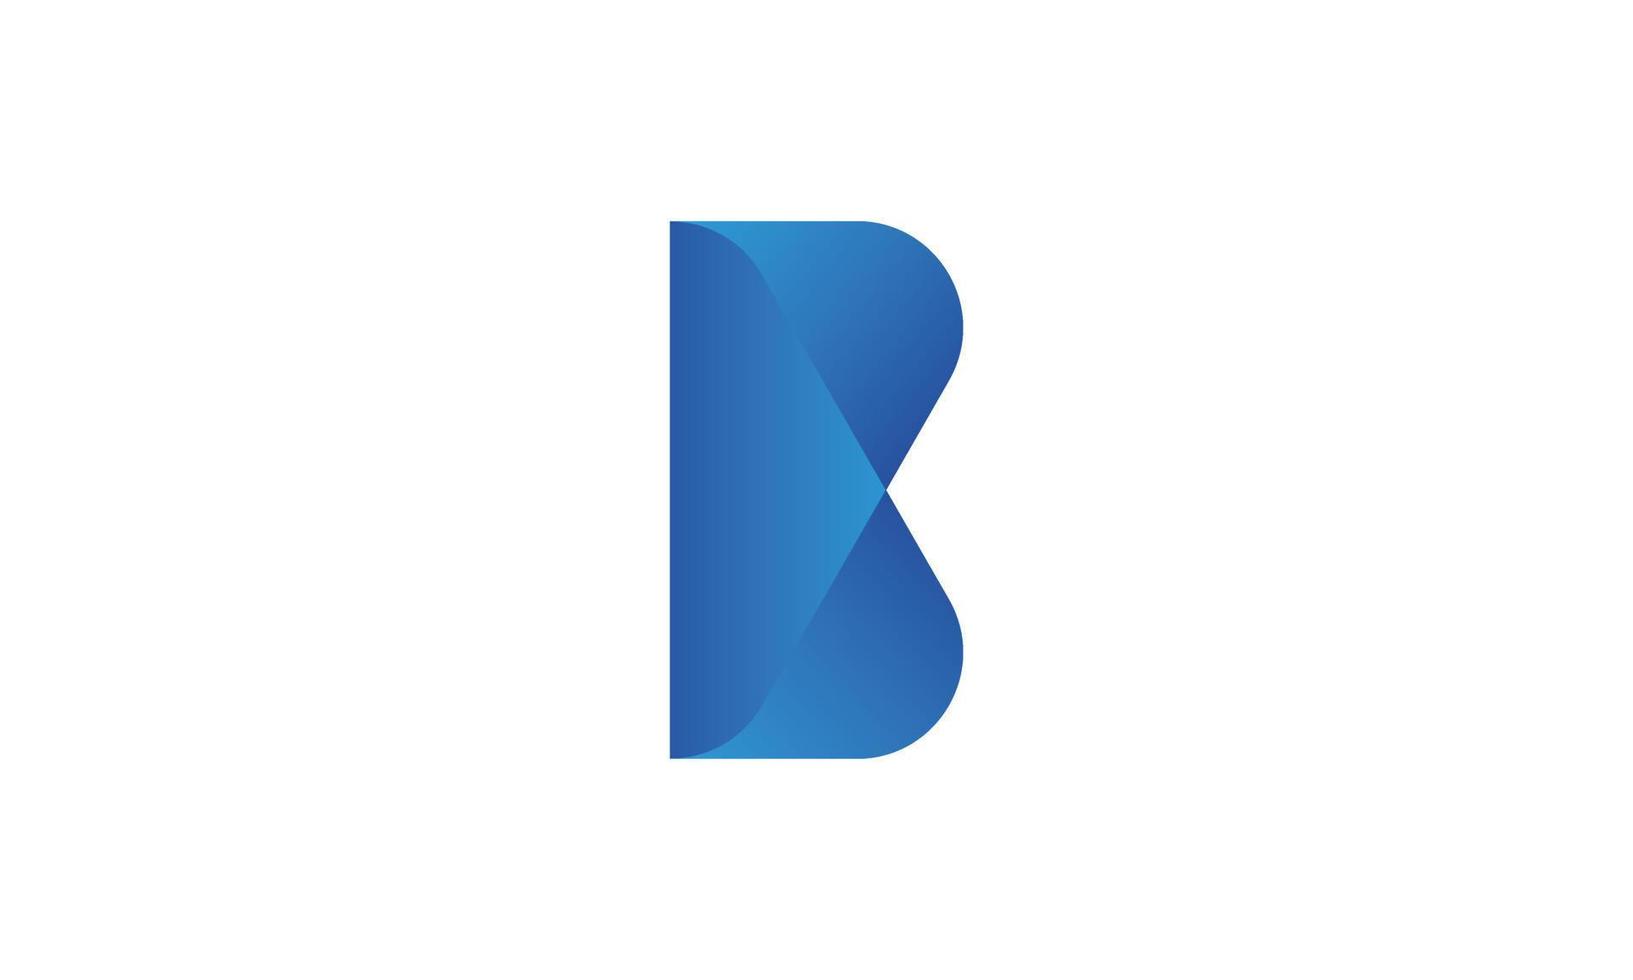 moderner b-logo-design-vektor pro-vektor vektor